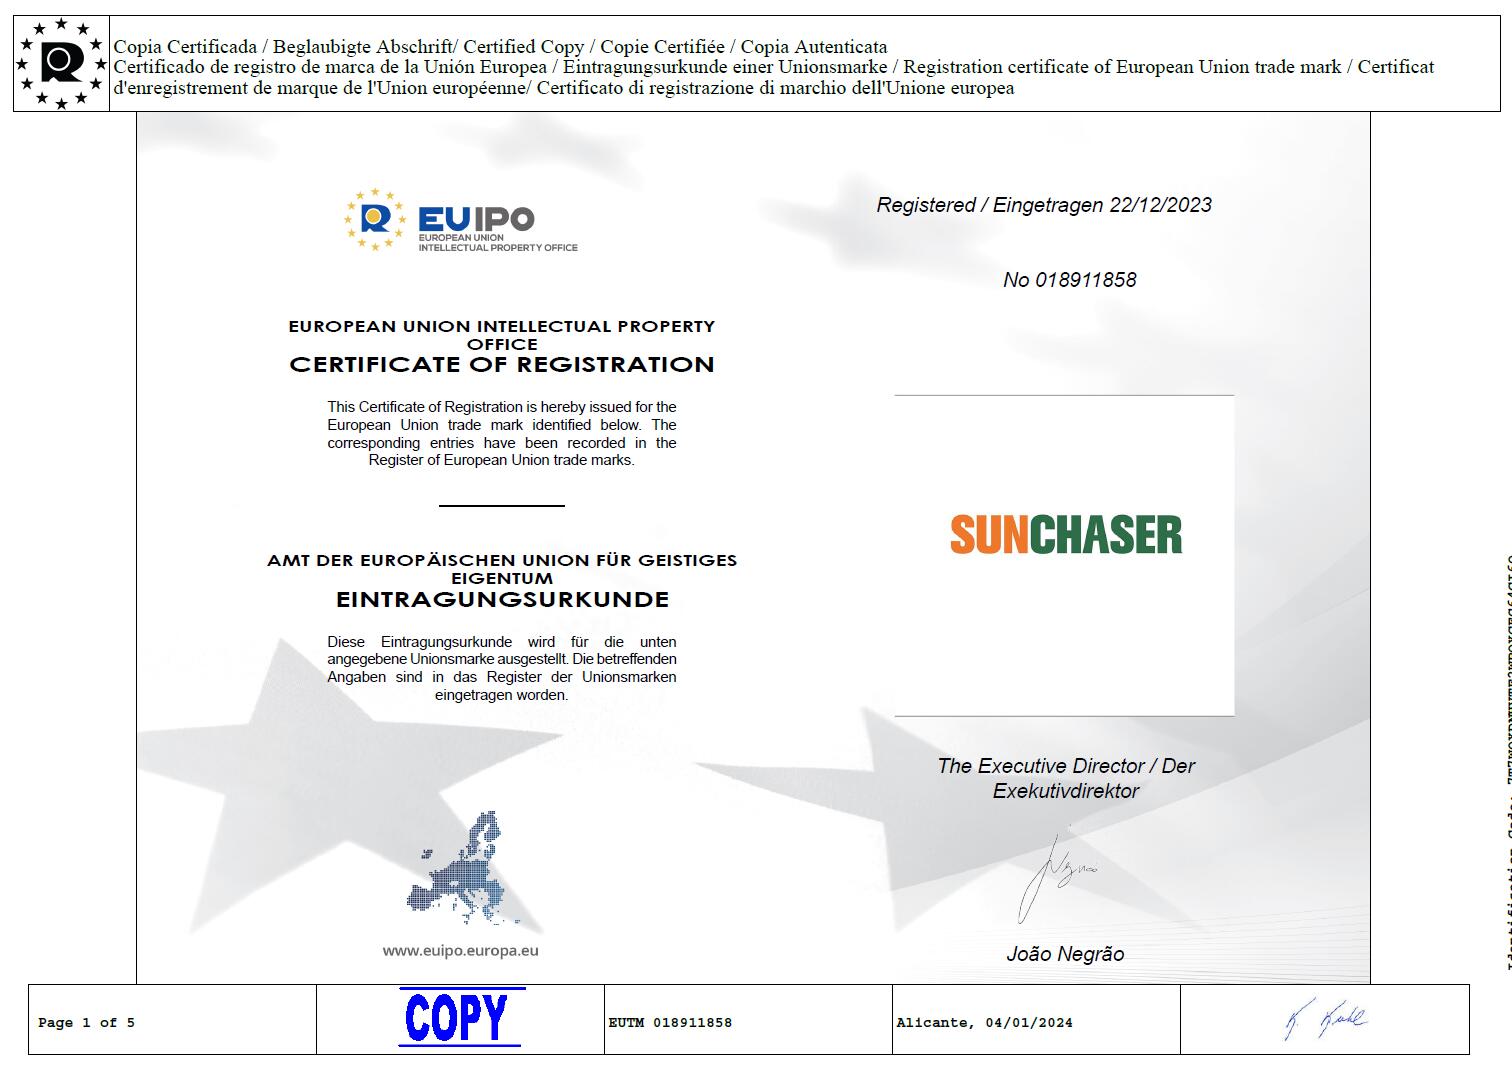 TIANTECH SOLAR GROUP จดทะเบียนเครื่องหมายการค้า SUNCHASER ในยุโรปได้สำเร็จ